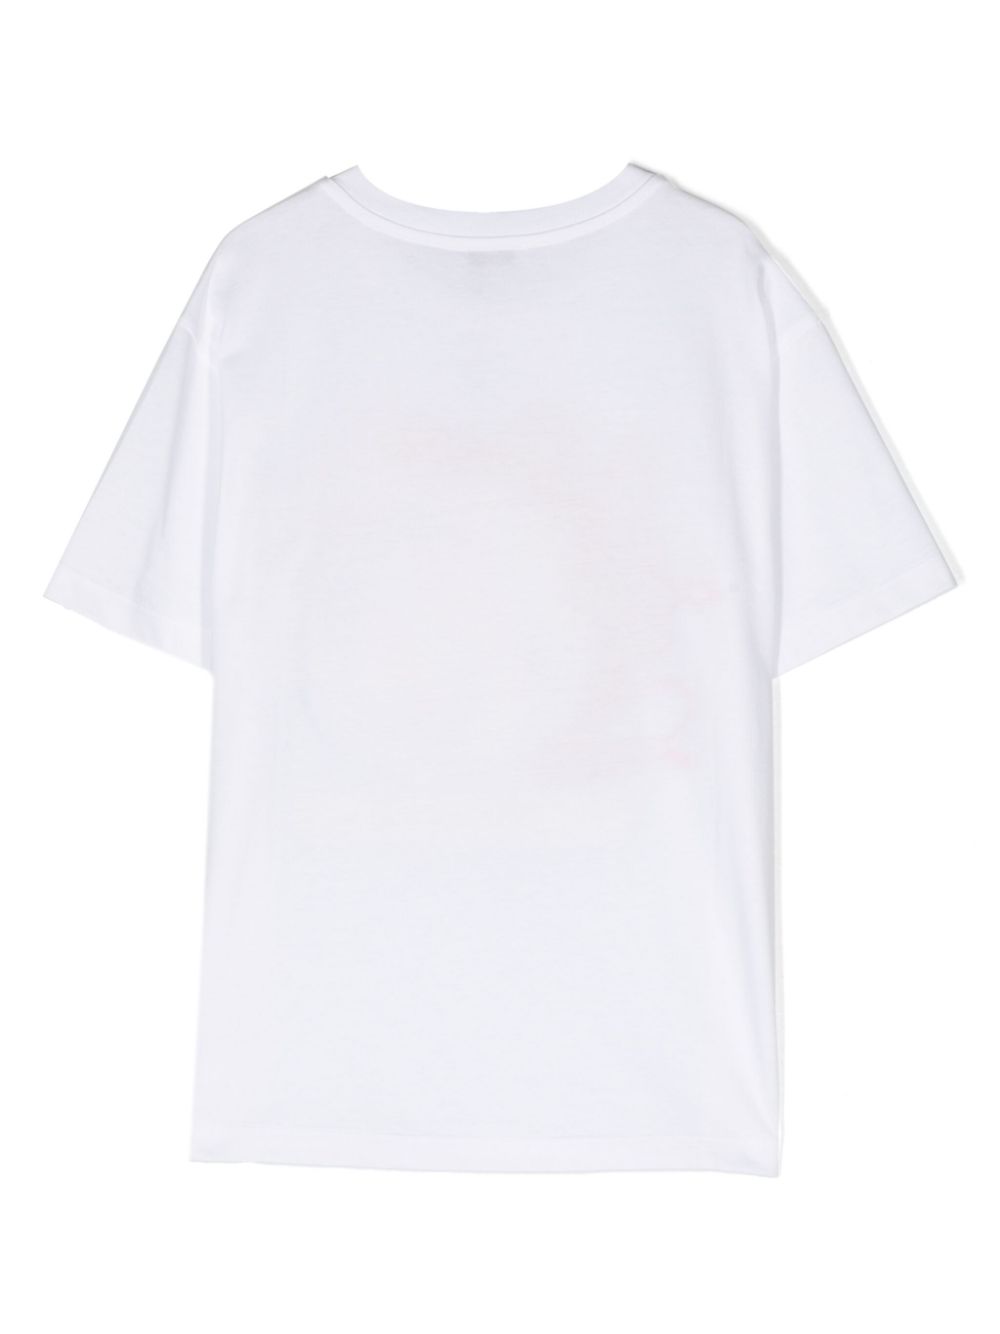 t-shirt bianca bambino